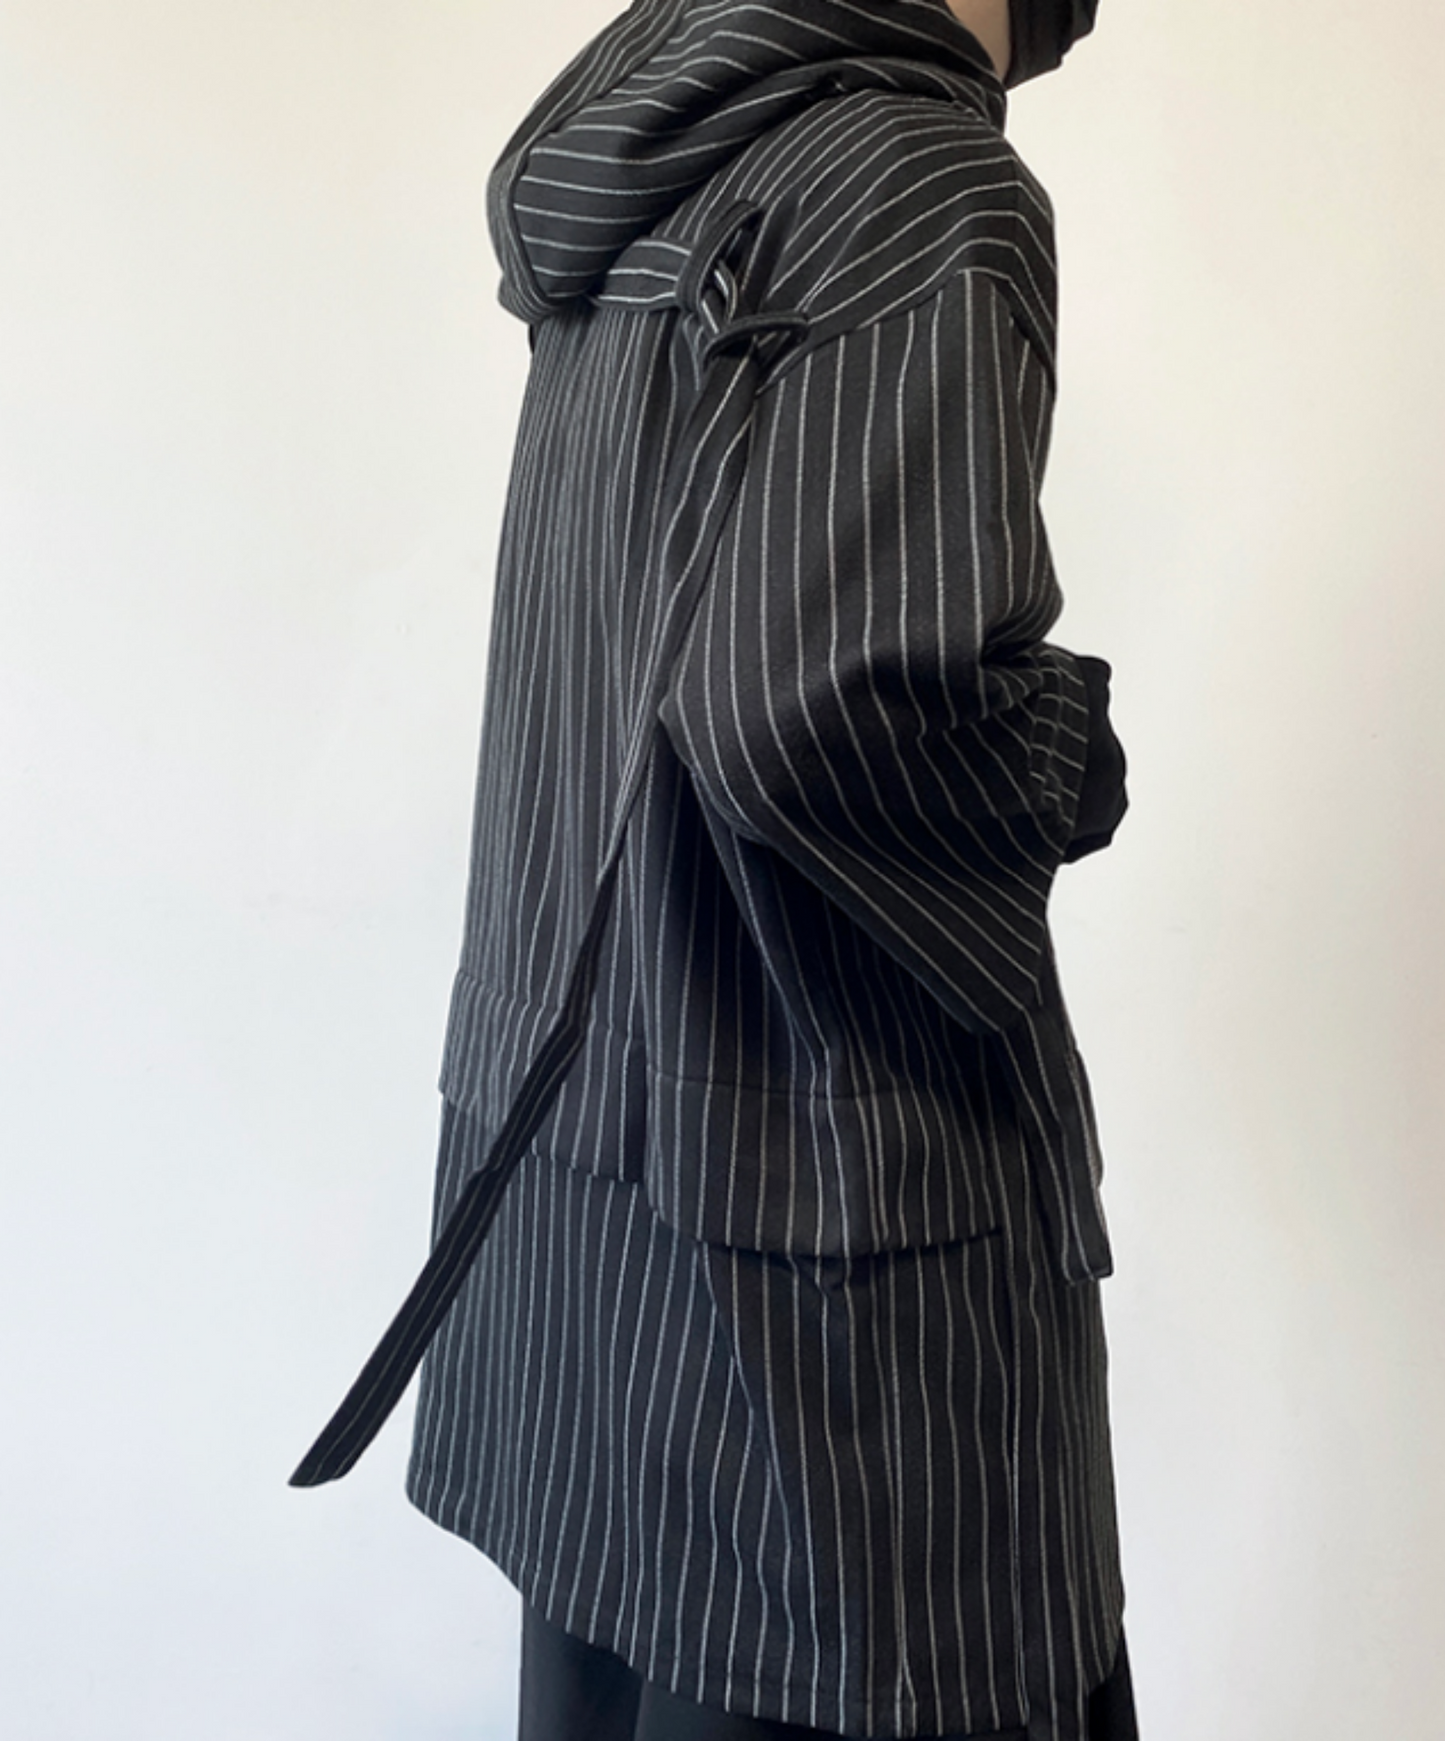 【style11】dark mode outfit set EN892（hoodie + pants set）